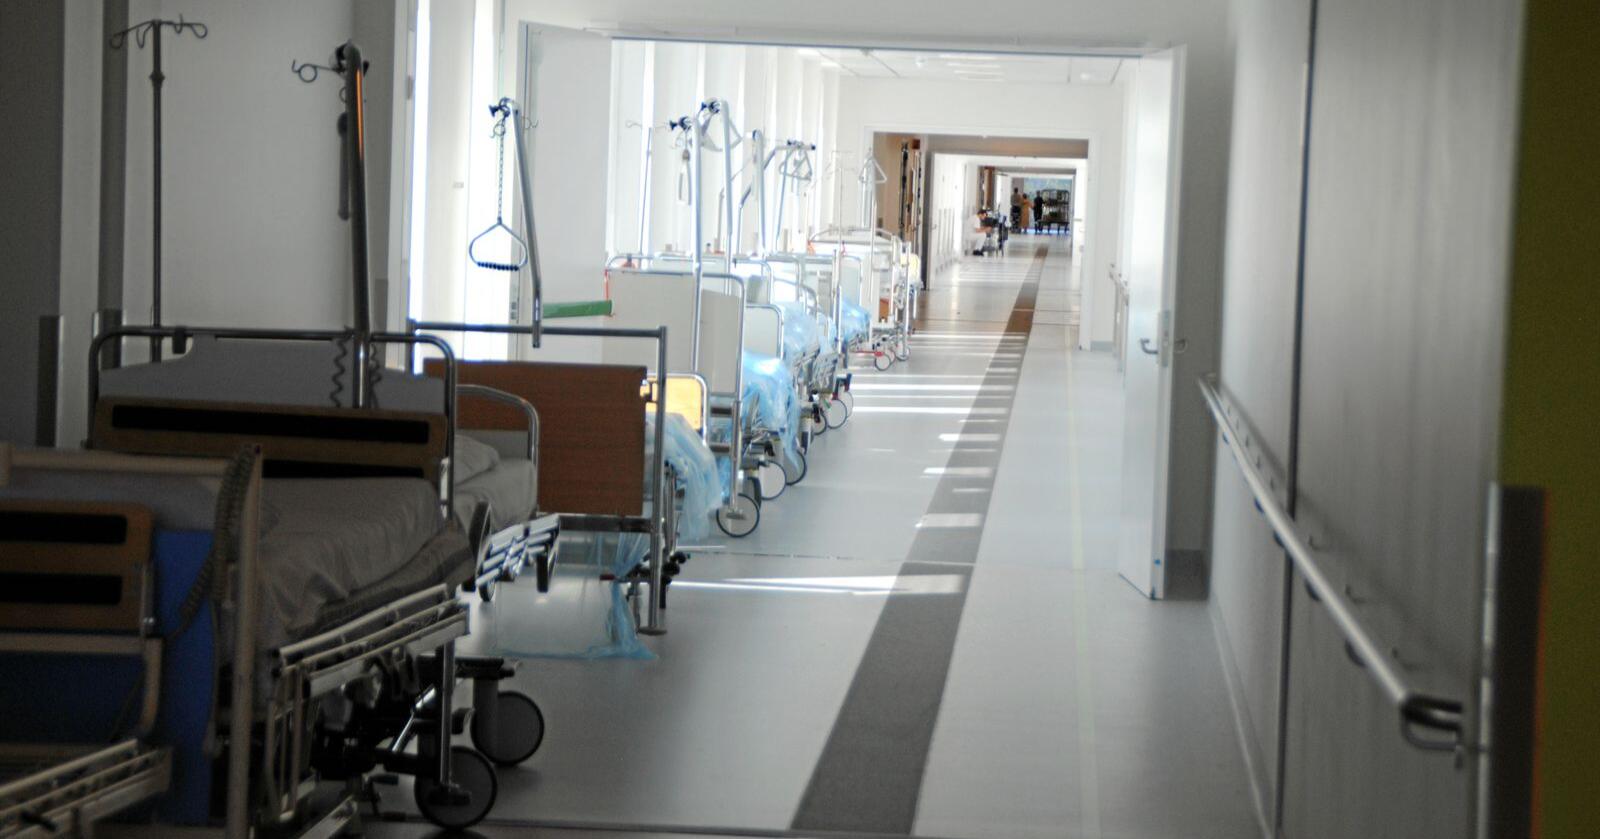 Sprengt kapasitet: Sykehuset Østfold Kalnes er for lite, fem år etter at det stod ferdig. Foto: Lars Bilit Hagen